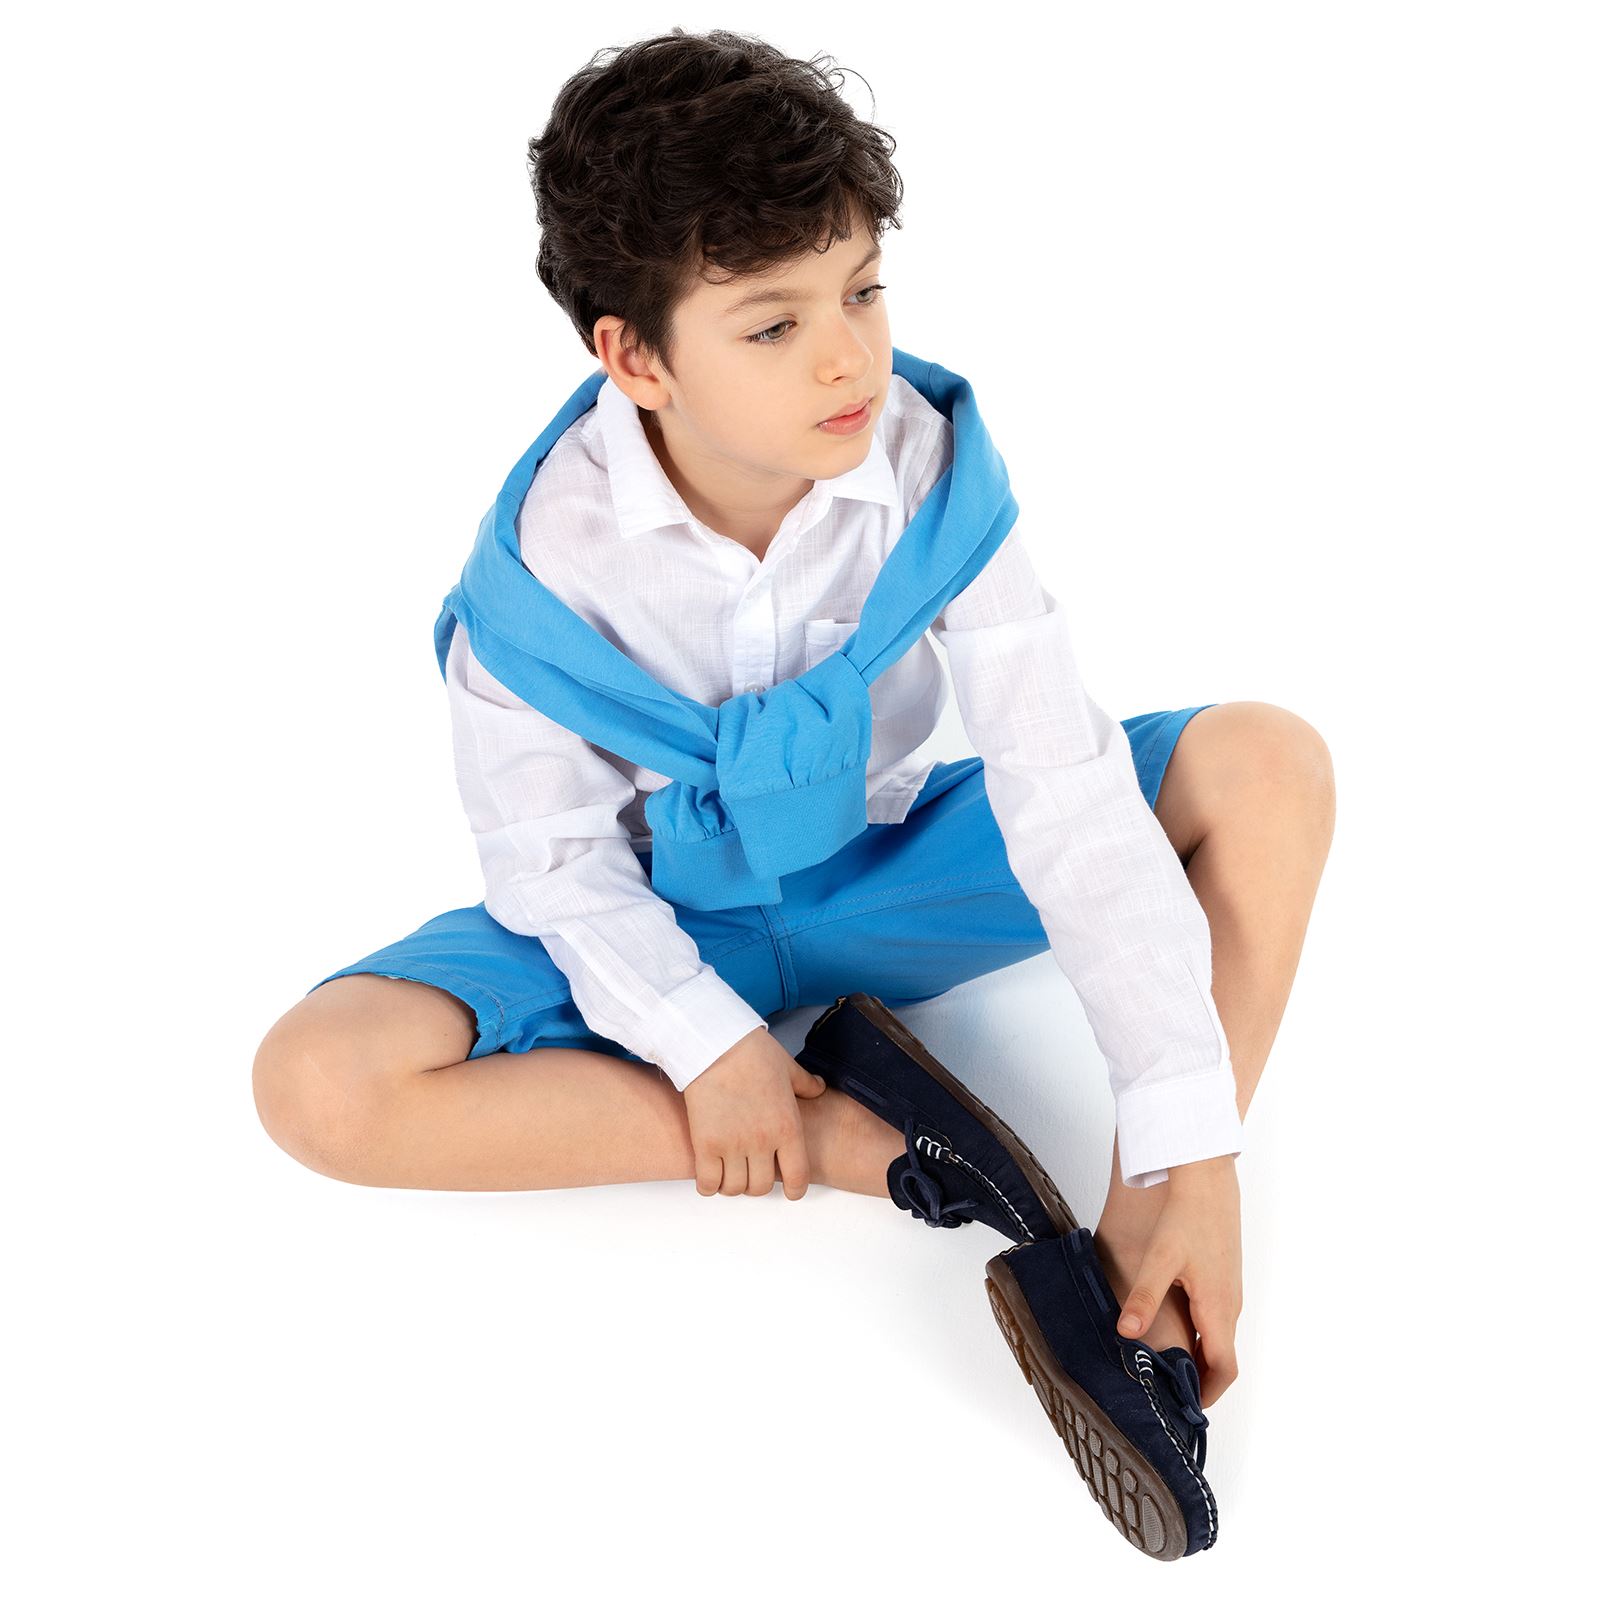 Harli Erkek Çocuk Klasik Ayakkabı 31-35 Numara Lacivert